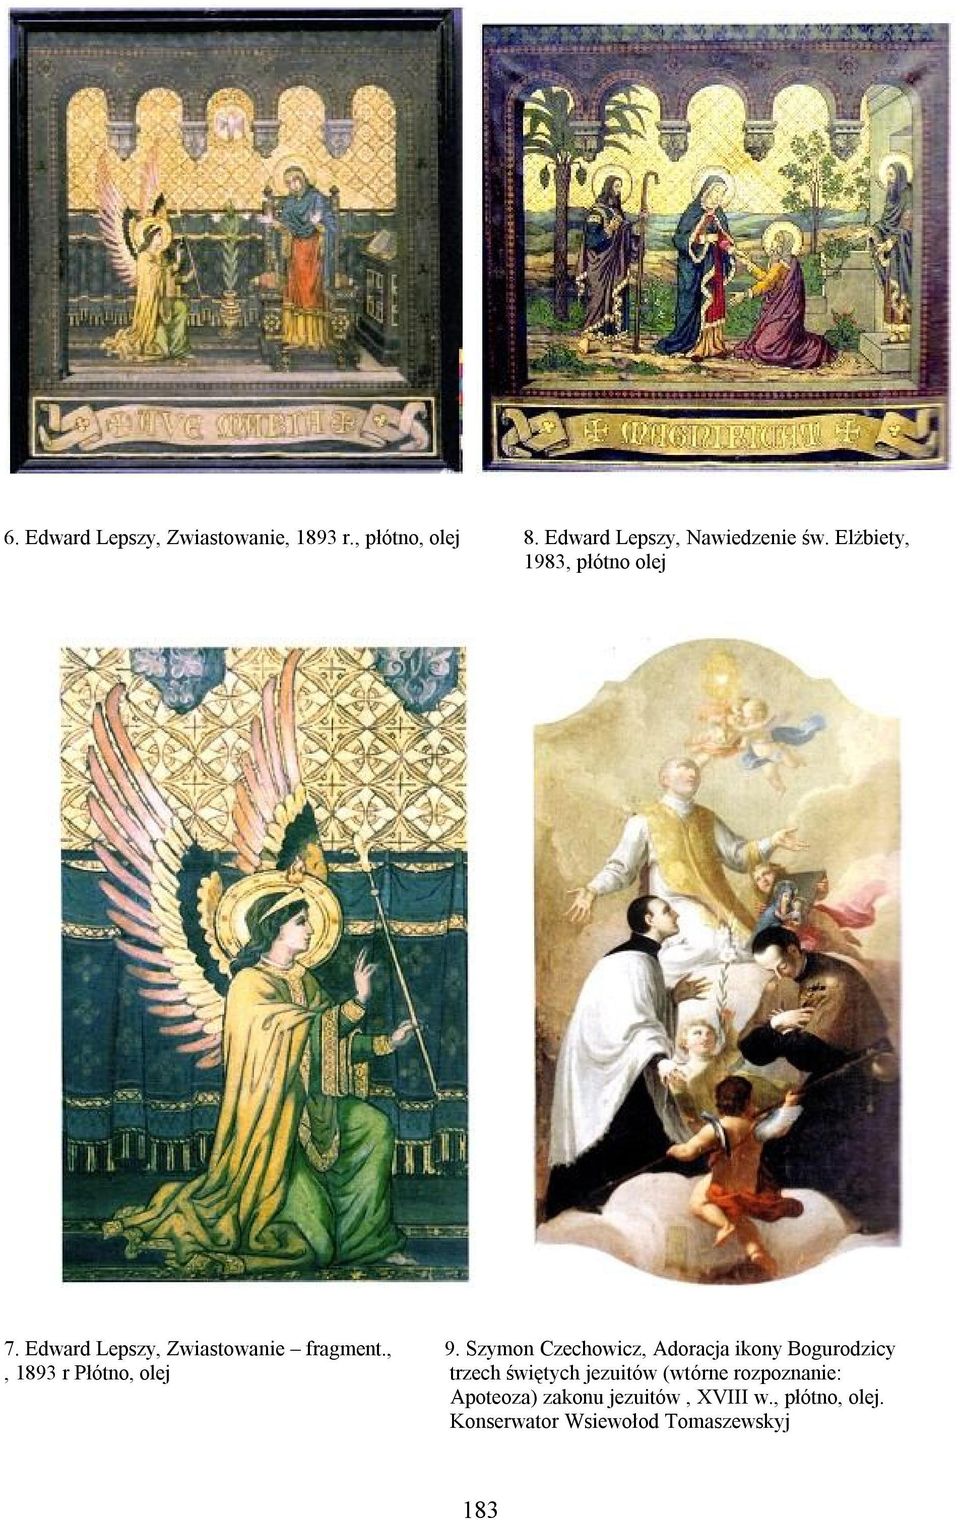 Szymon Czechowicz, Adoracja ikony Bogurodzicy, 1893 r Płótno, olej trzech świętych